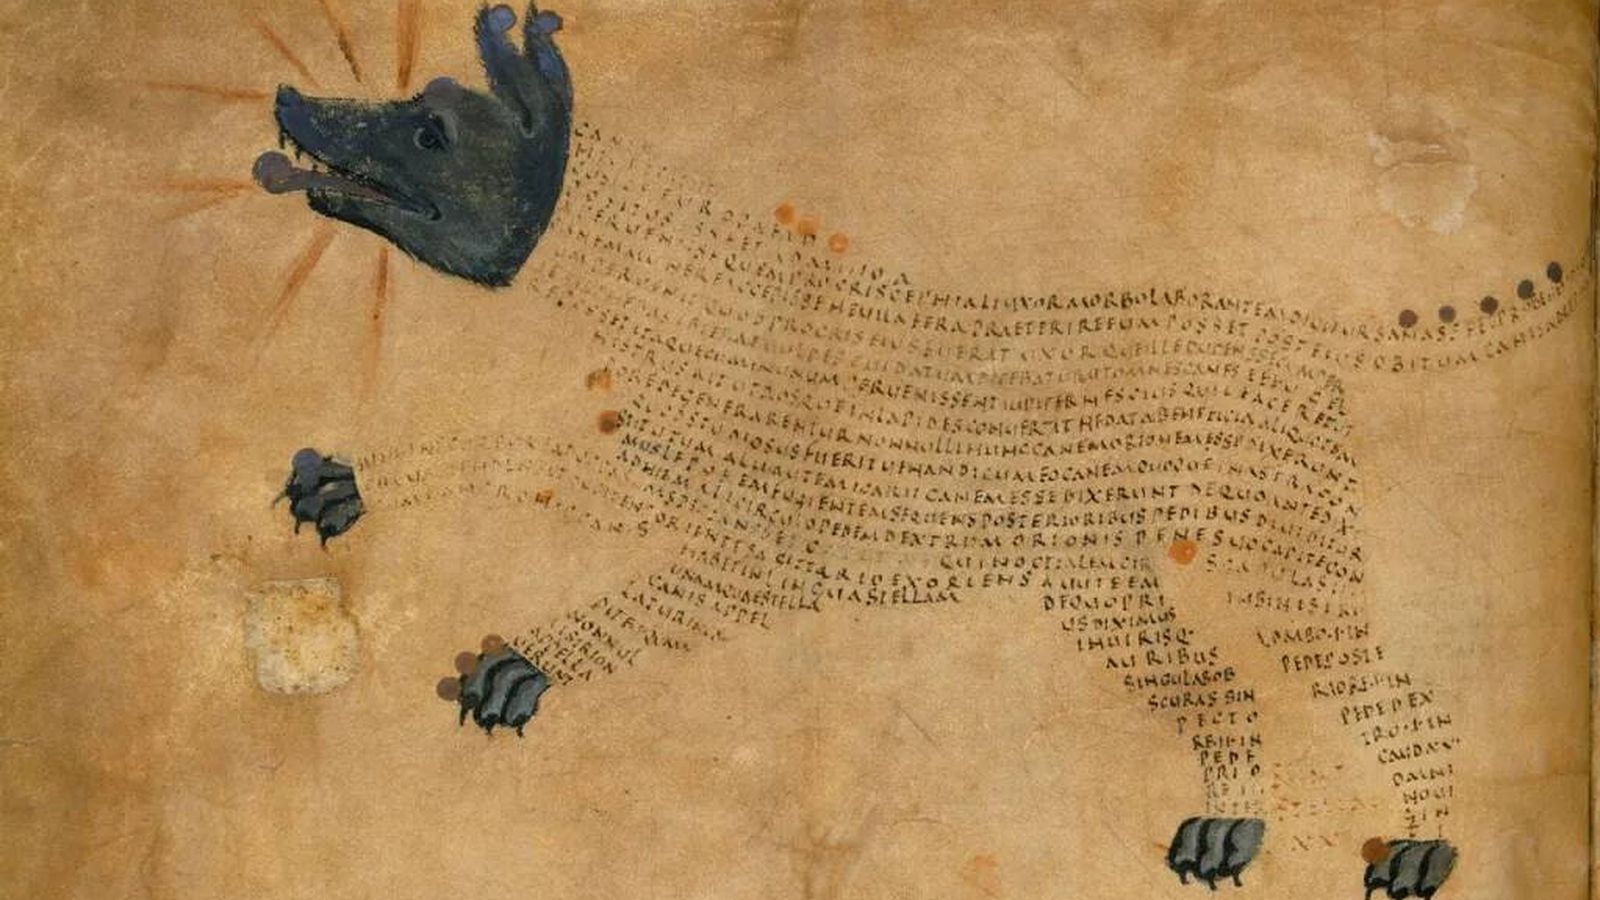 La constelación de Sirius the Dog Star en el manuscrito medieval de Cotton MS Tiberius. (Wikimedia)